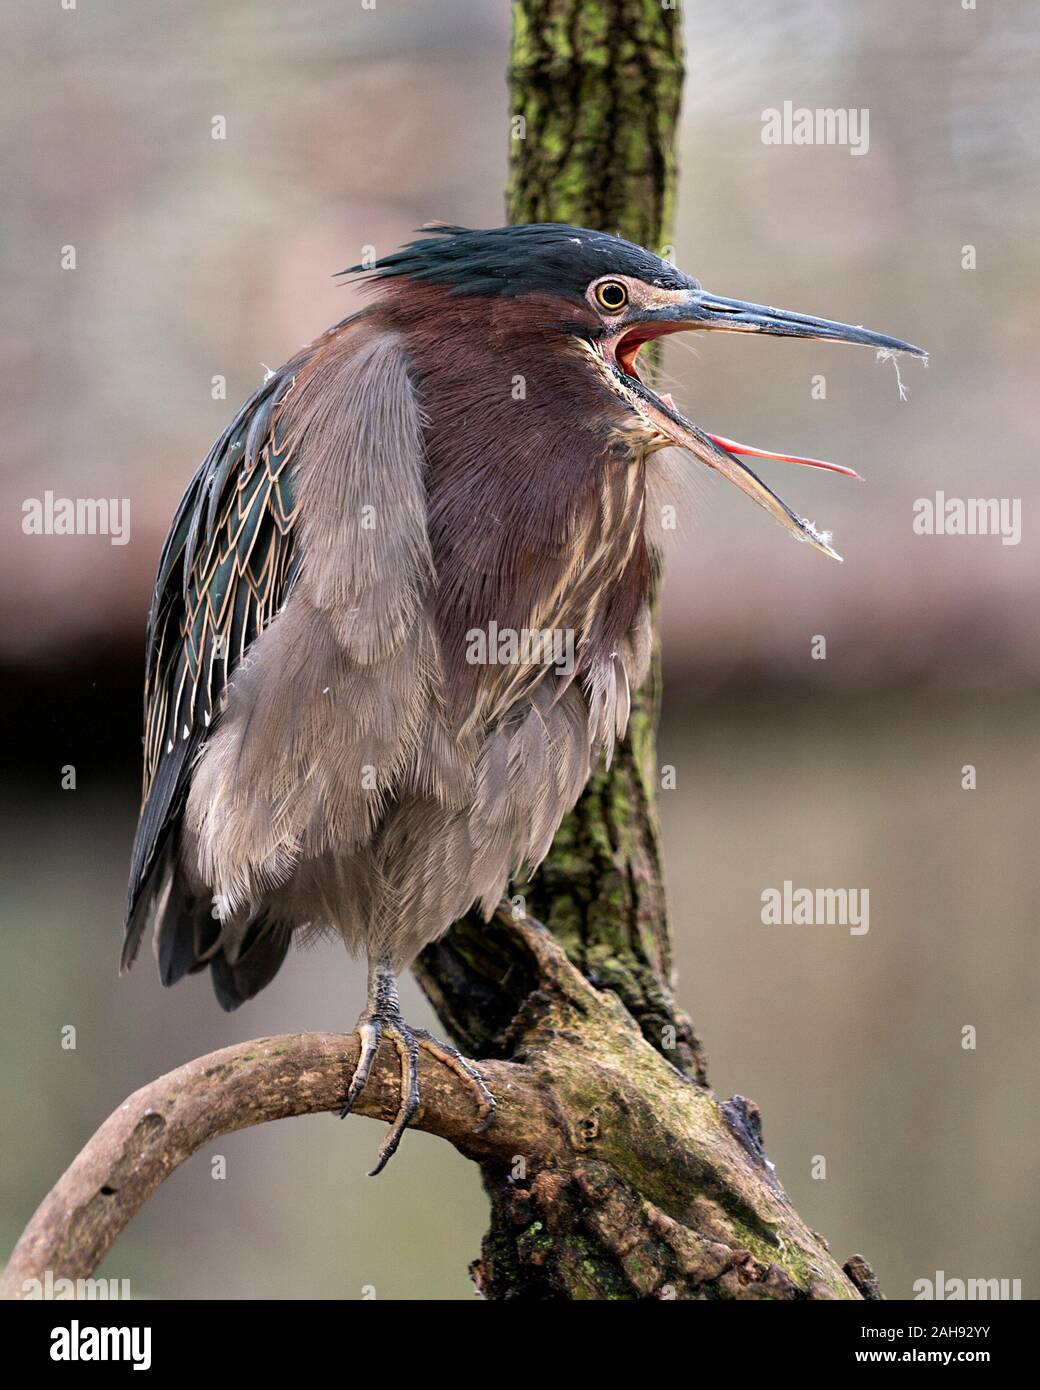 Green Heron Vogel auf einem Zweig angezeigte blaue Federn, Körper, geöffneten Schnabel, im Schnabel, Kopf, Augen, Füße mit einem Bokeh Hintergrund in seiner Umwelt Stockfoto